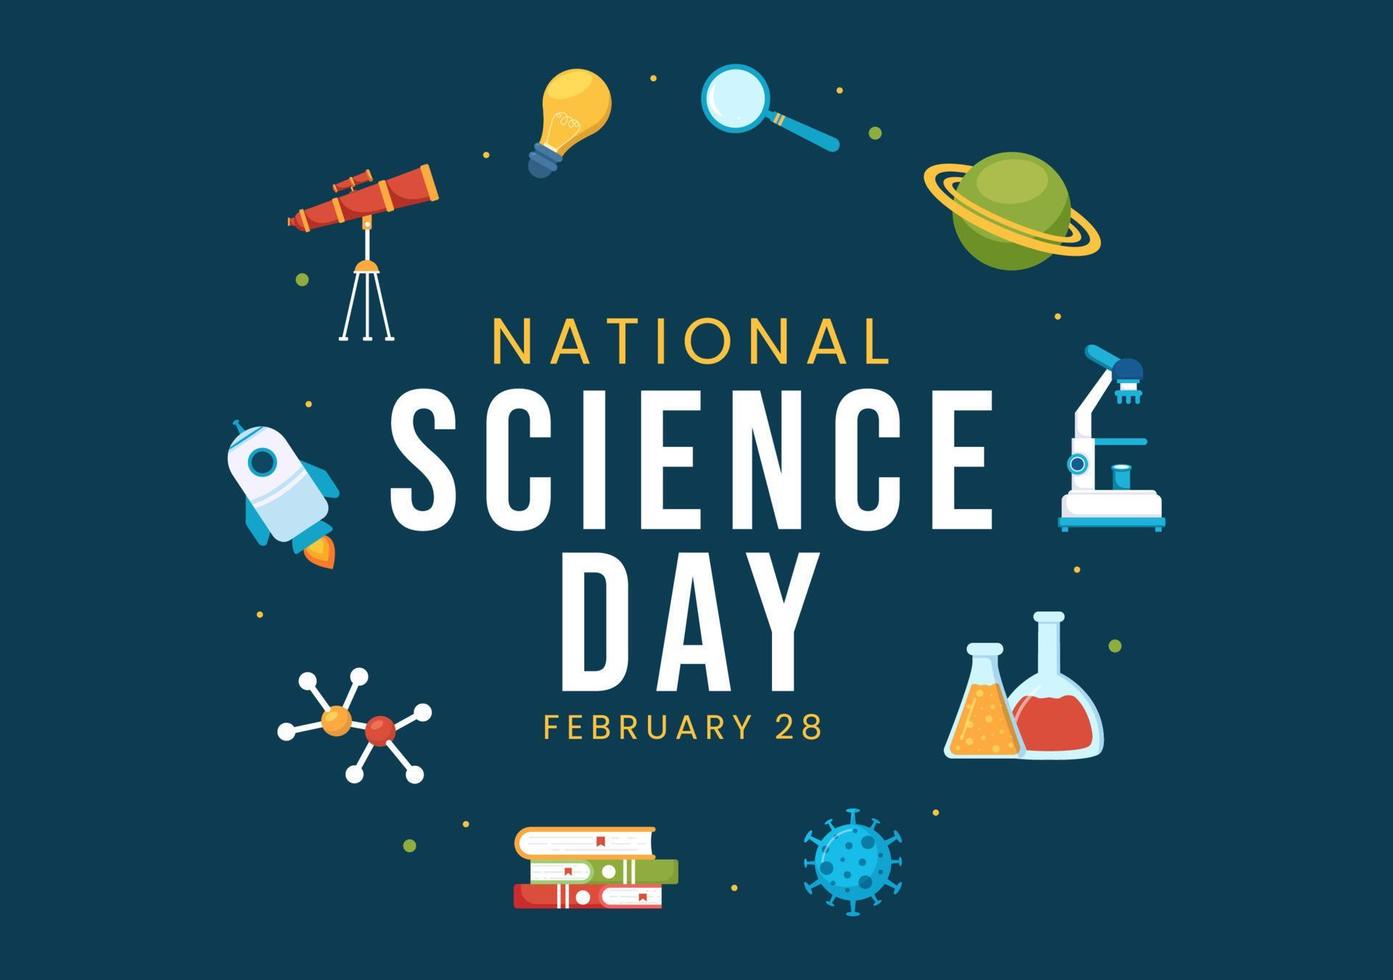 día nacional de la ciencia 28 de febrero relacionado con líquido químico, científico, médico e investigación en dibujos animados planos dibujados a mano ilustración de plantillas vector